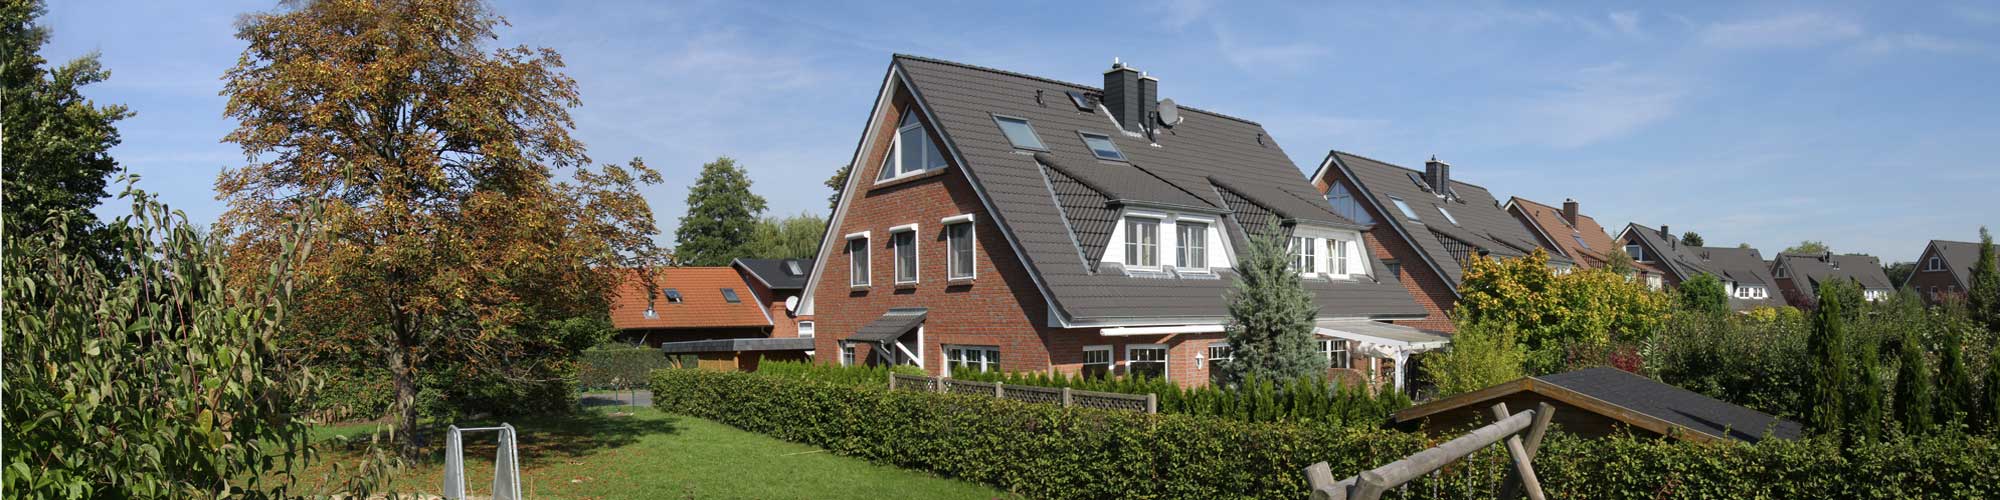 Halstenbeck Doppelhaus - KIMOS GmbH